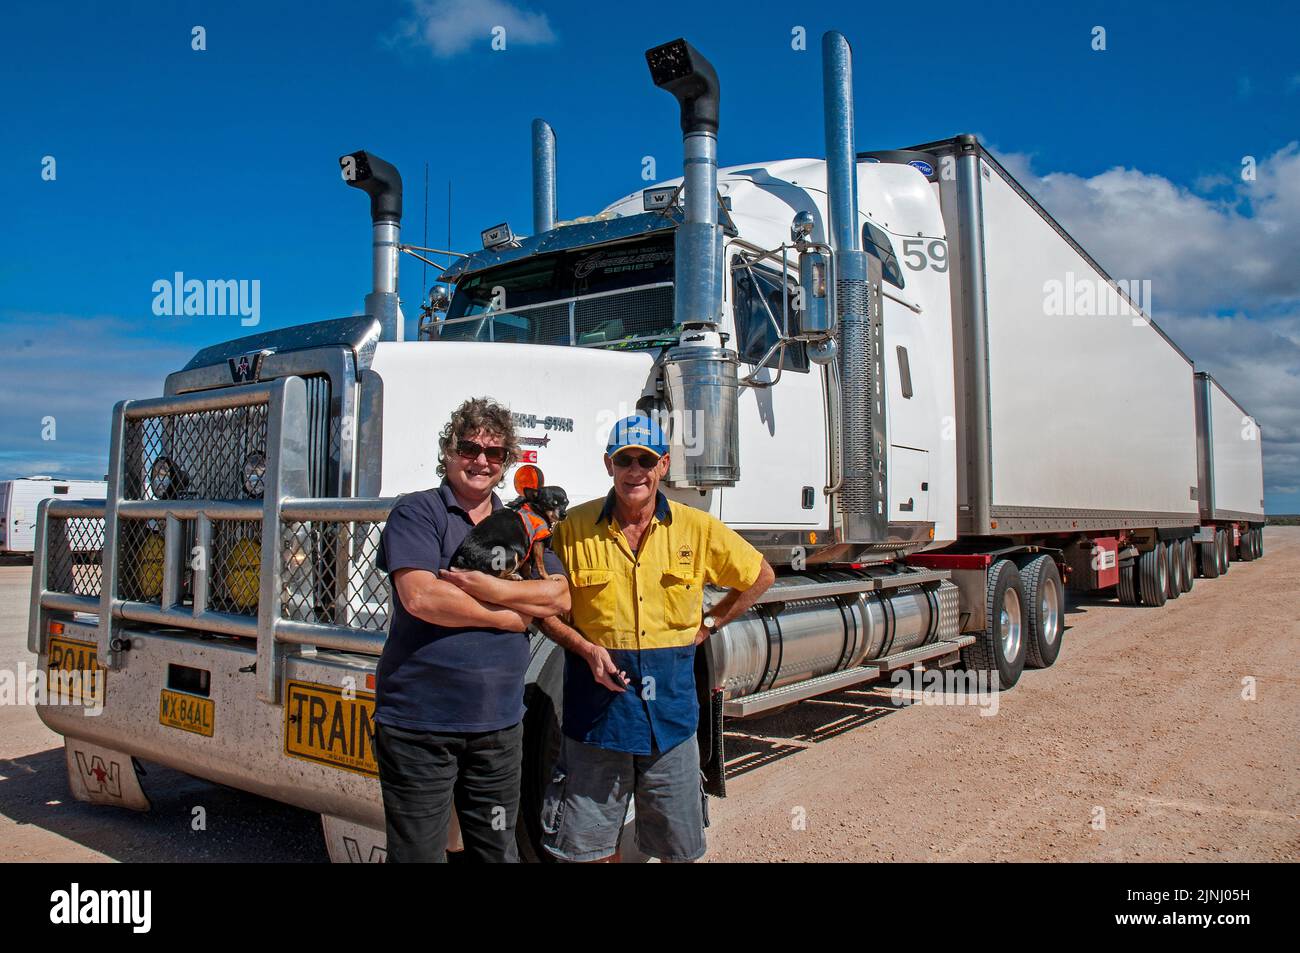 Donna camionista, Faye Francis-Lewis, con il suo B Double Truck in cui trasporta 75 tonnellate di pomodori due volte a settimana tra Perth e Adelaide, coprendo una distanza superiore a 10.000 km Foto Stock